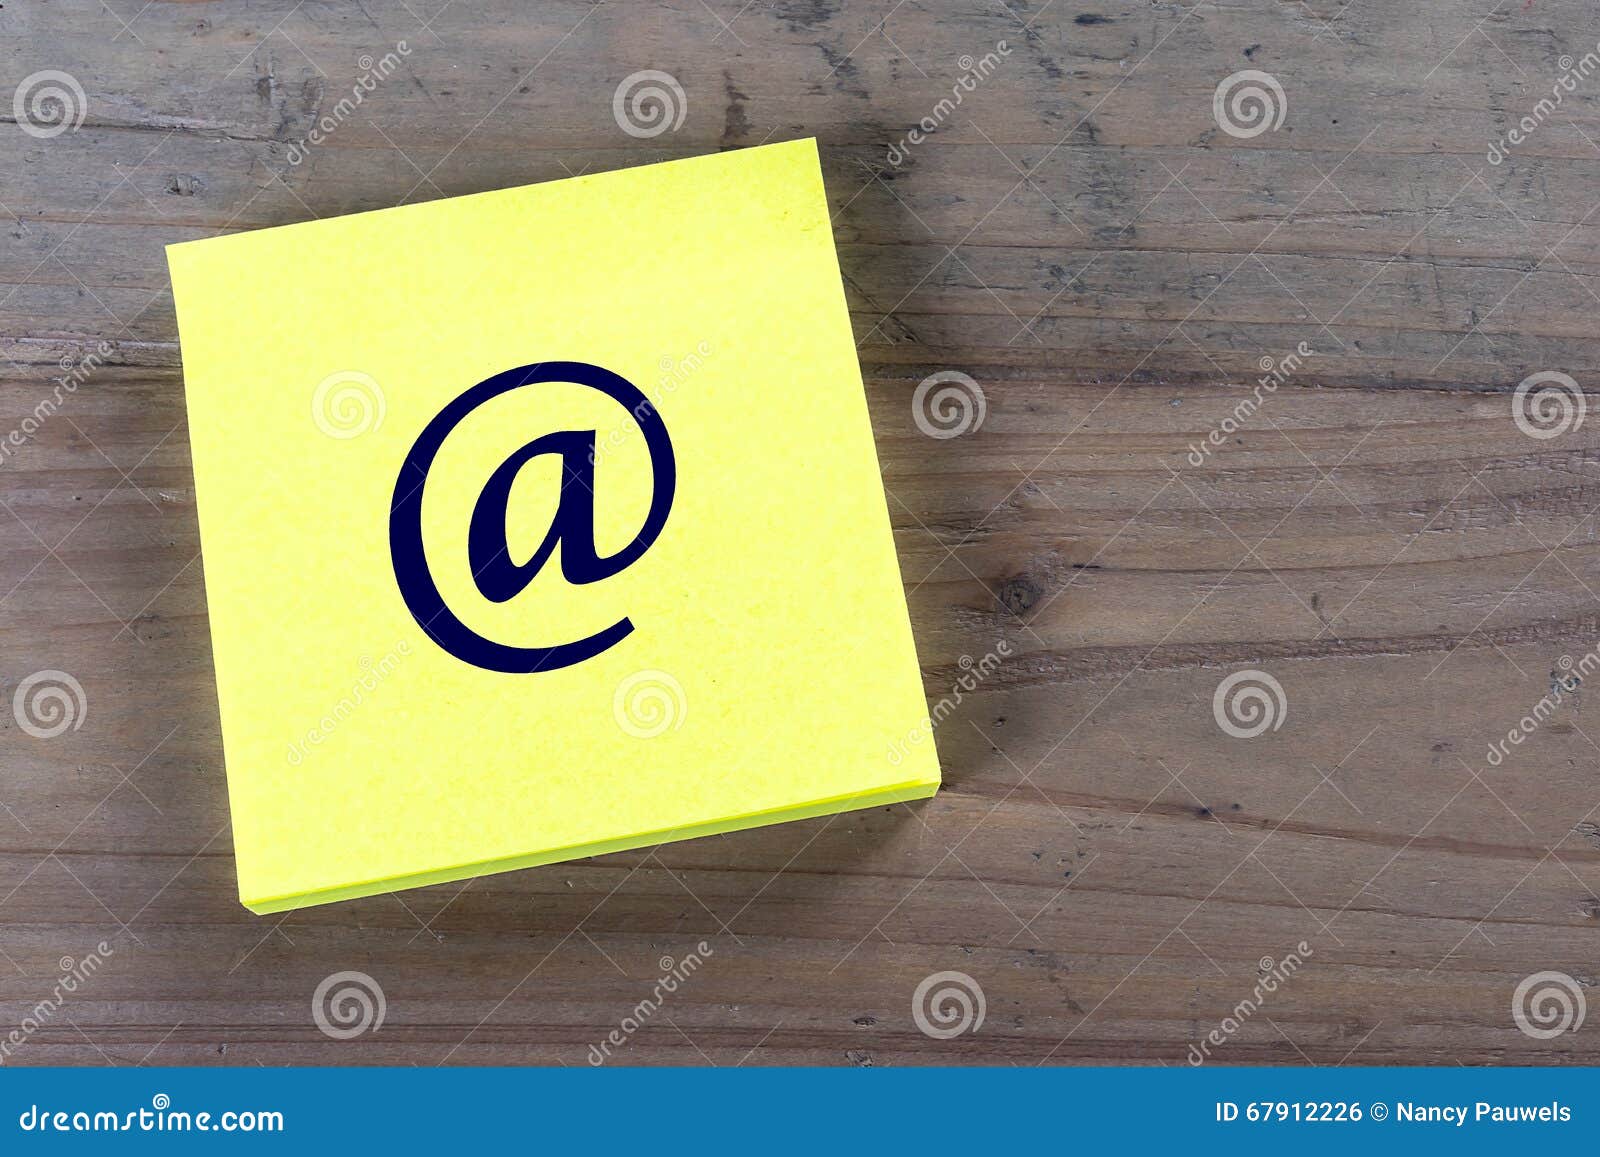 Simbolo del email sul Post-it. Post-it giallo con l'icona scritta del email su fondo di legno Copi lo spazio